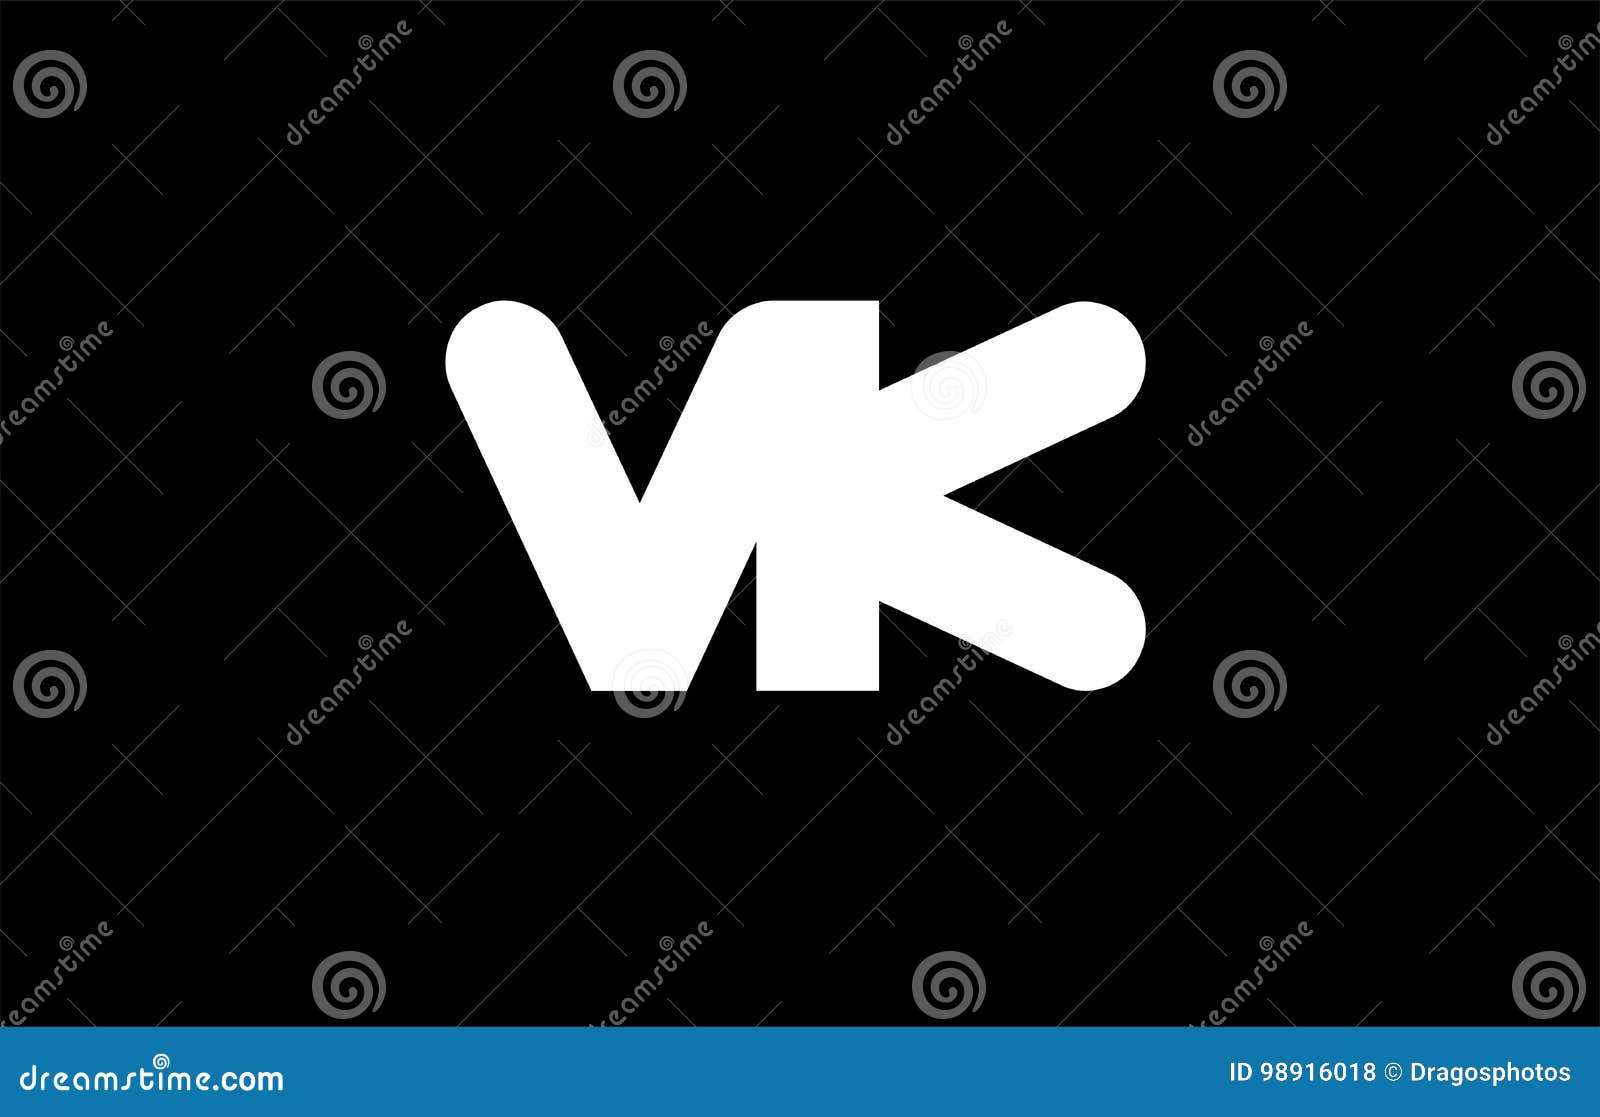 Luxury Logo K K Stock Photos and Images  123RF